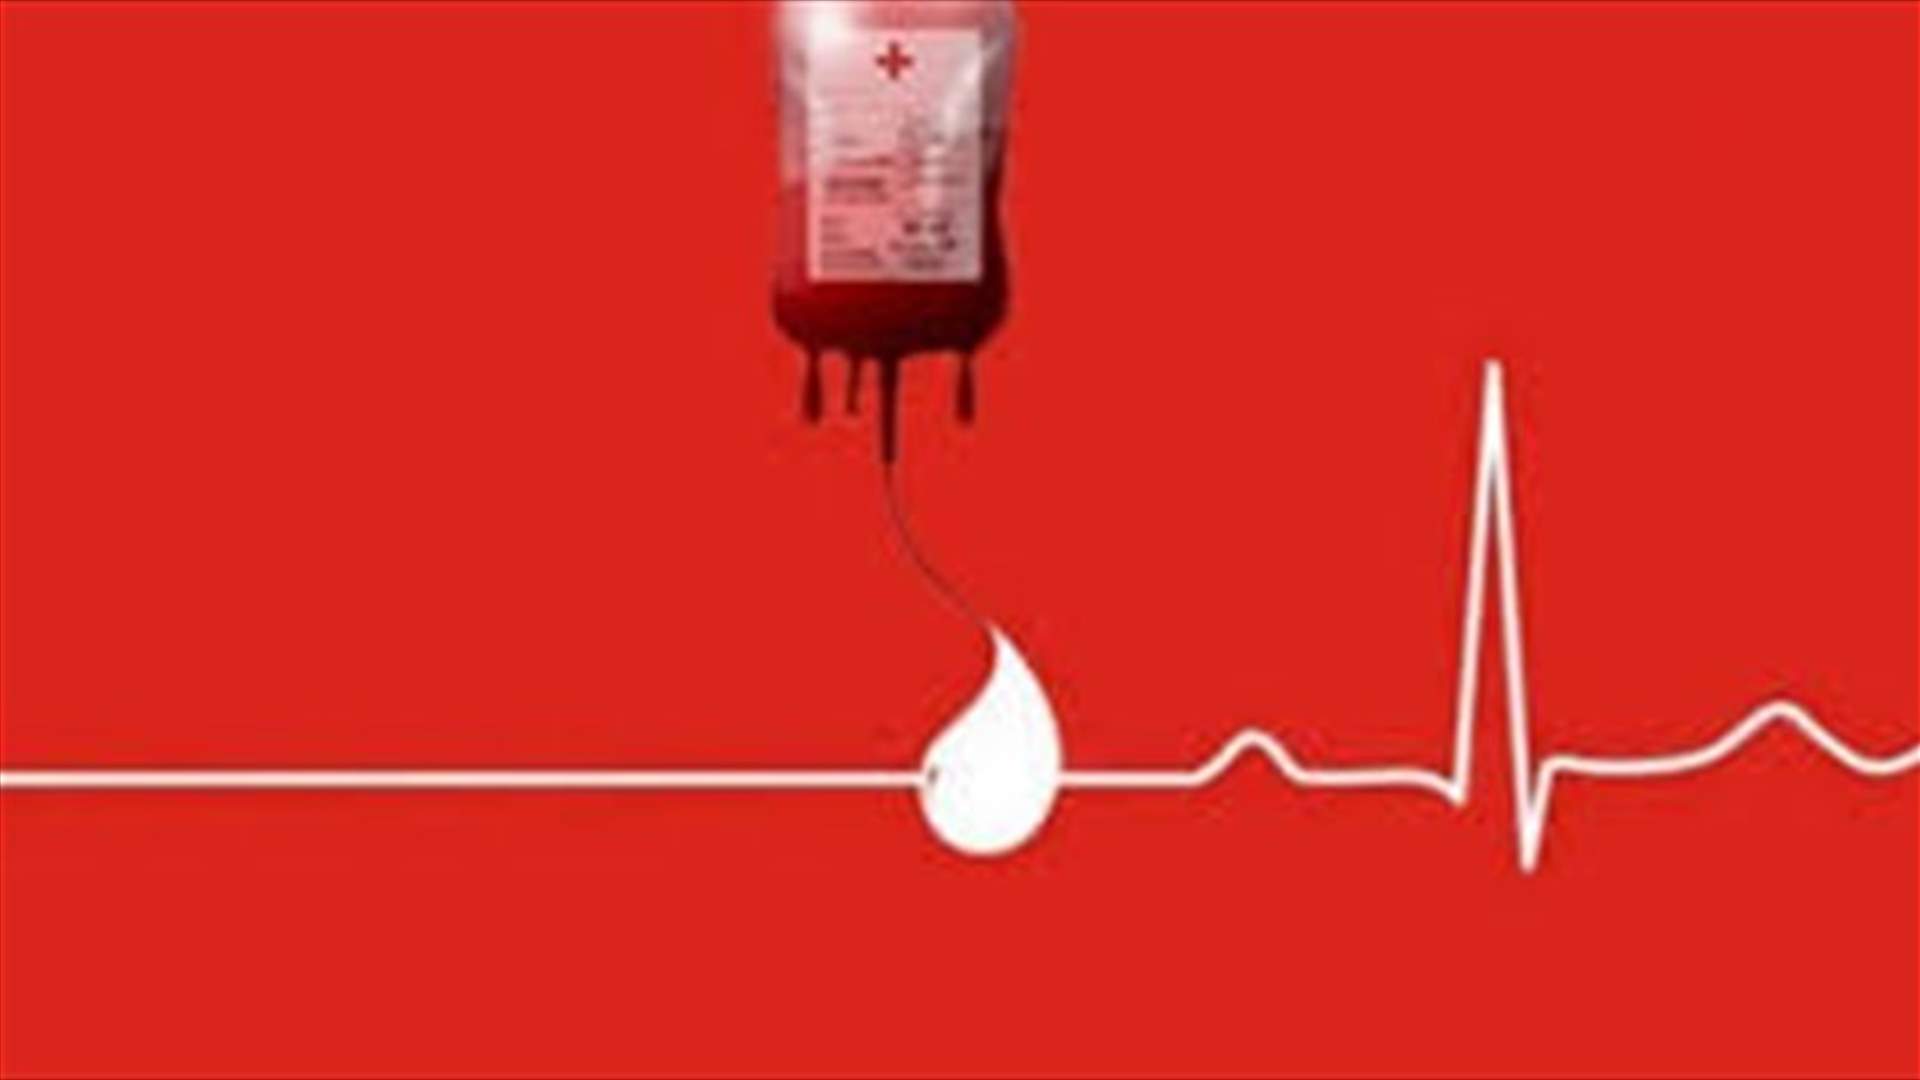 مريض بحاجة ماسّة لبلاكيت دم من فئة A+ أو O+ في مستشفى سيّدة المعونات جبيل للتبرّع الرجاء الاتصال على الرقم 03118777